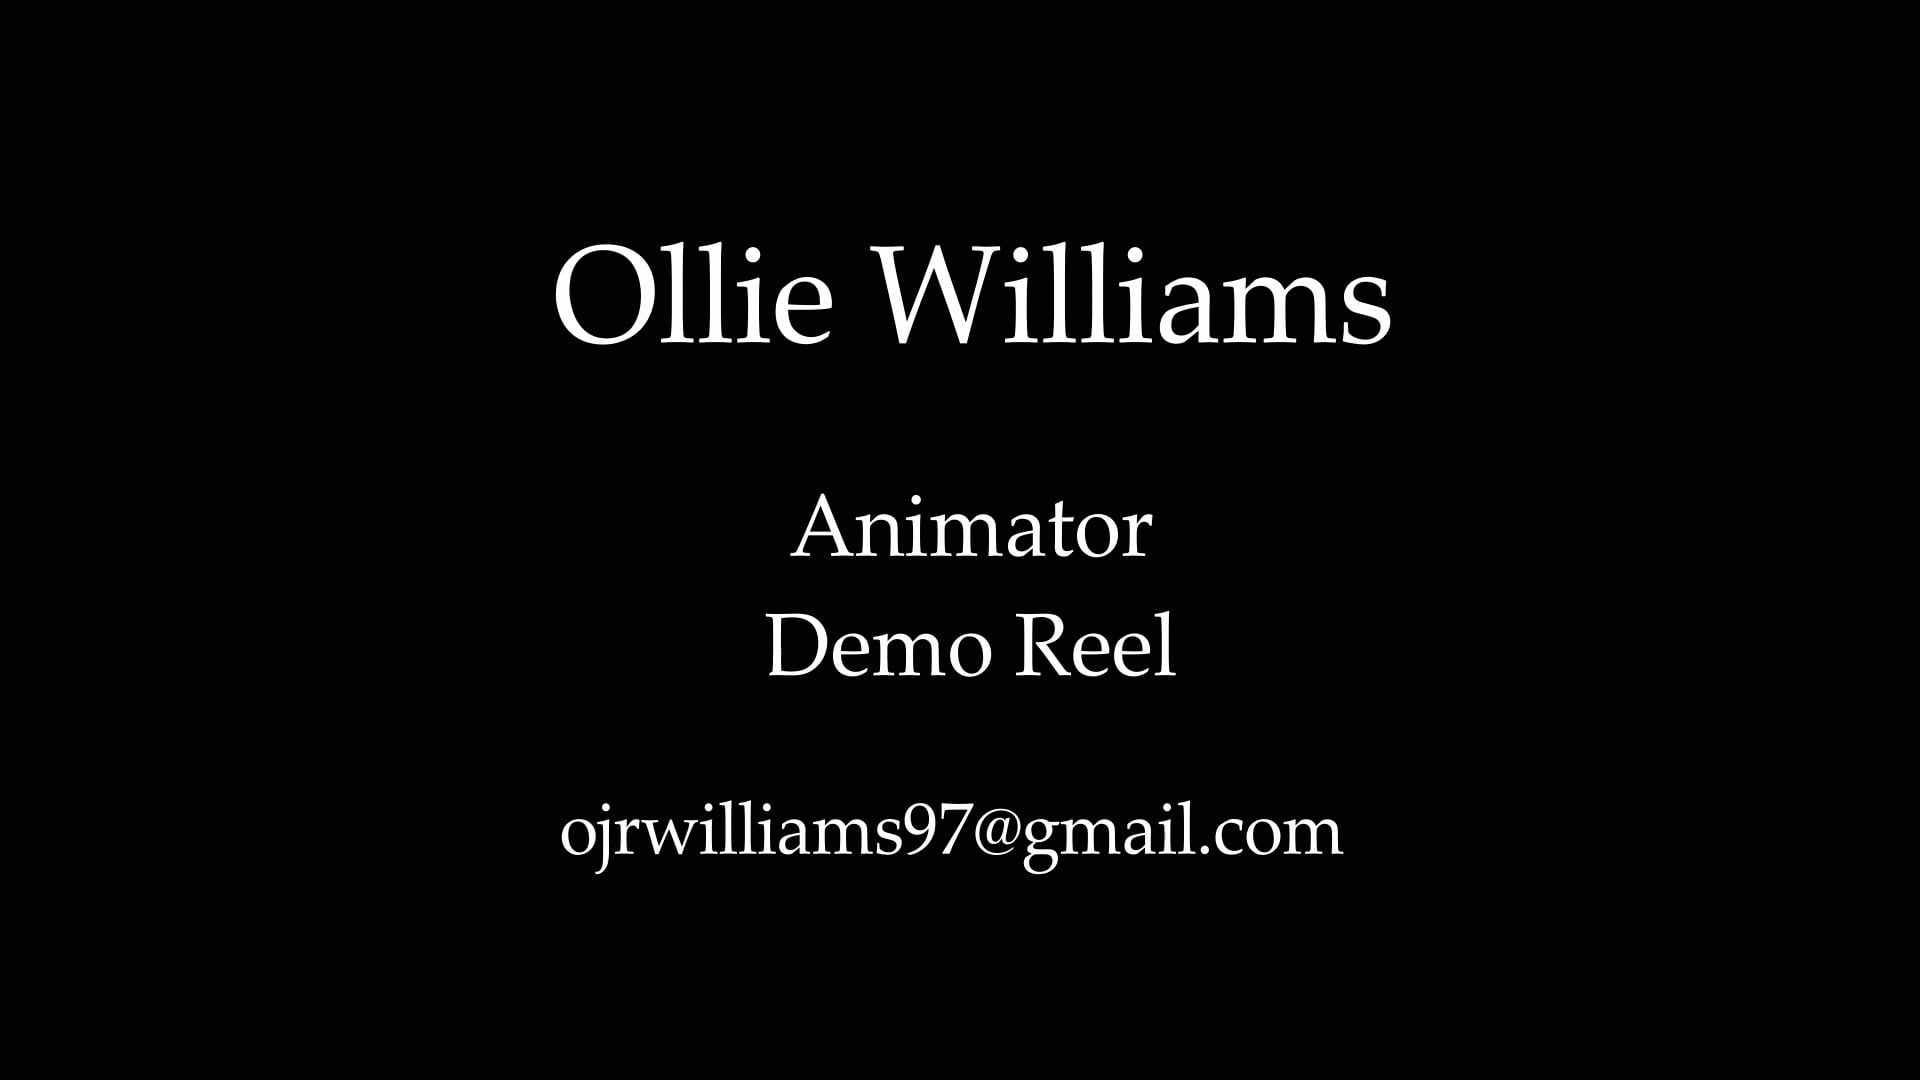 Ollie Williams Animation Demoreel